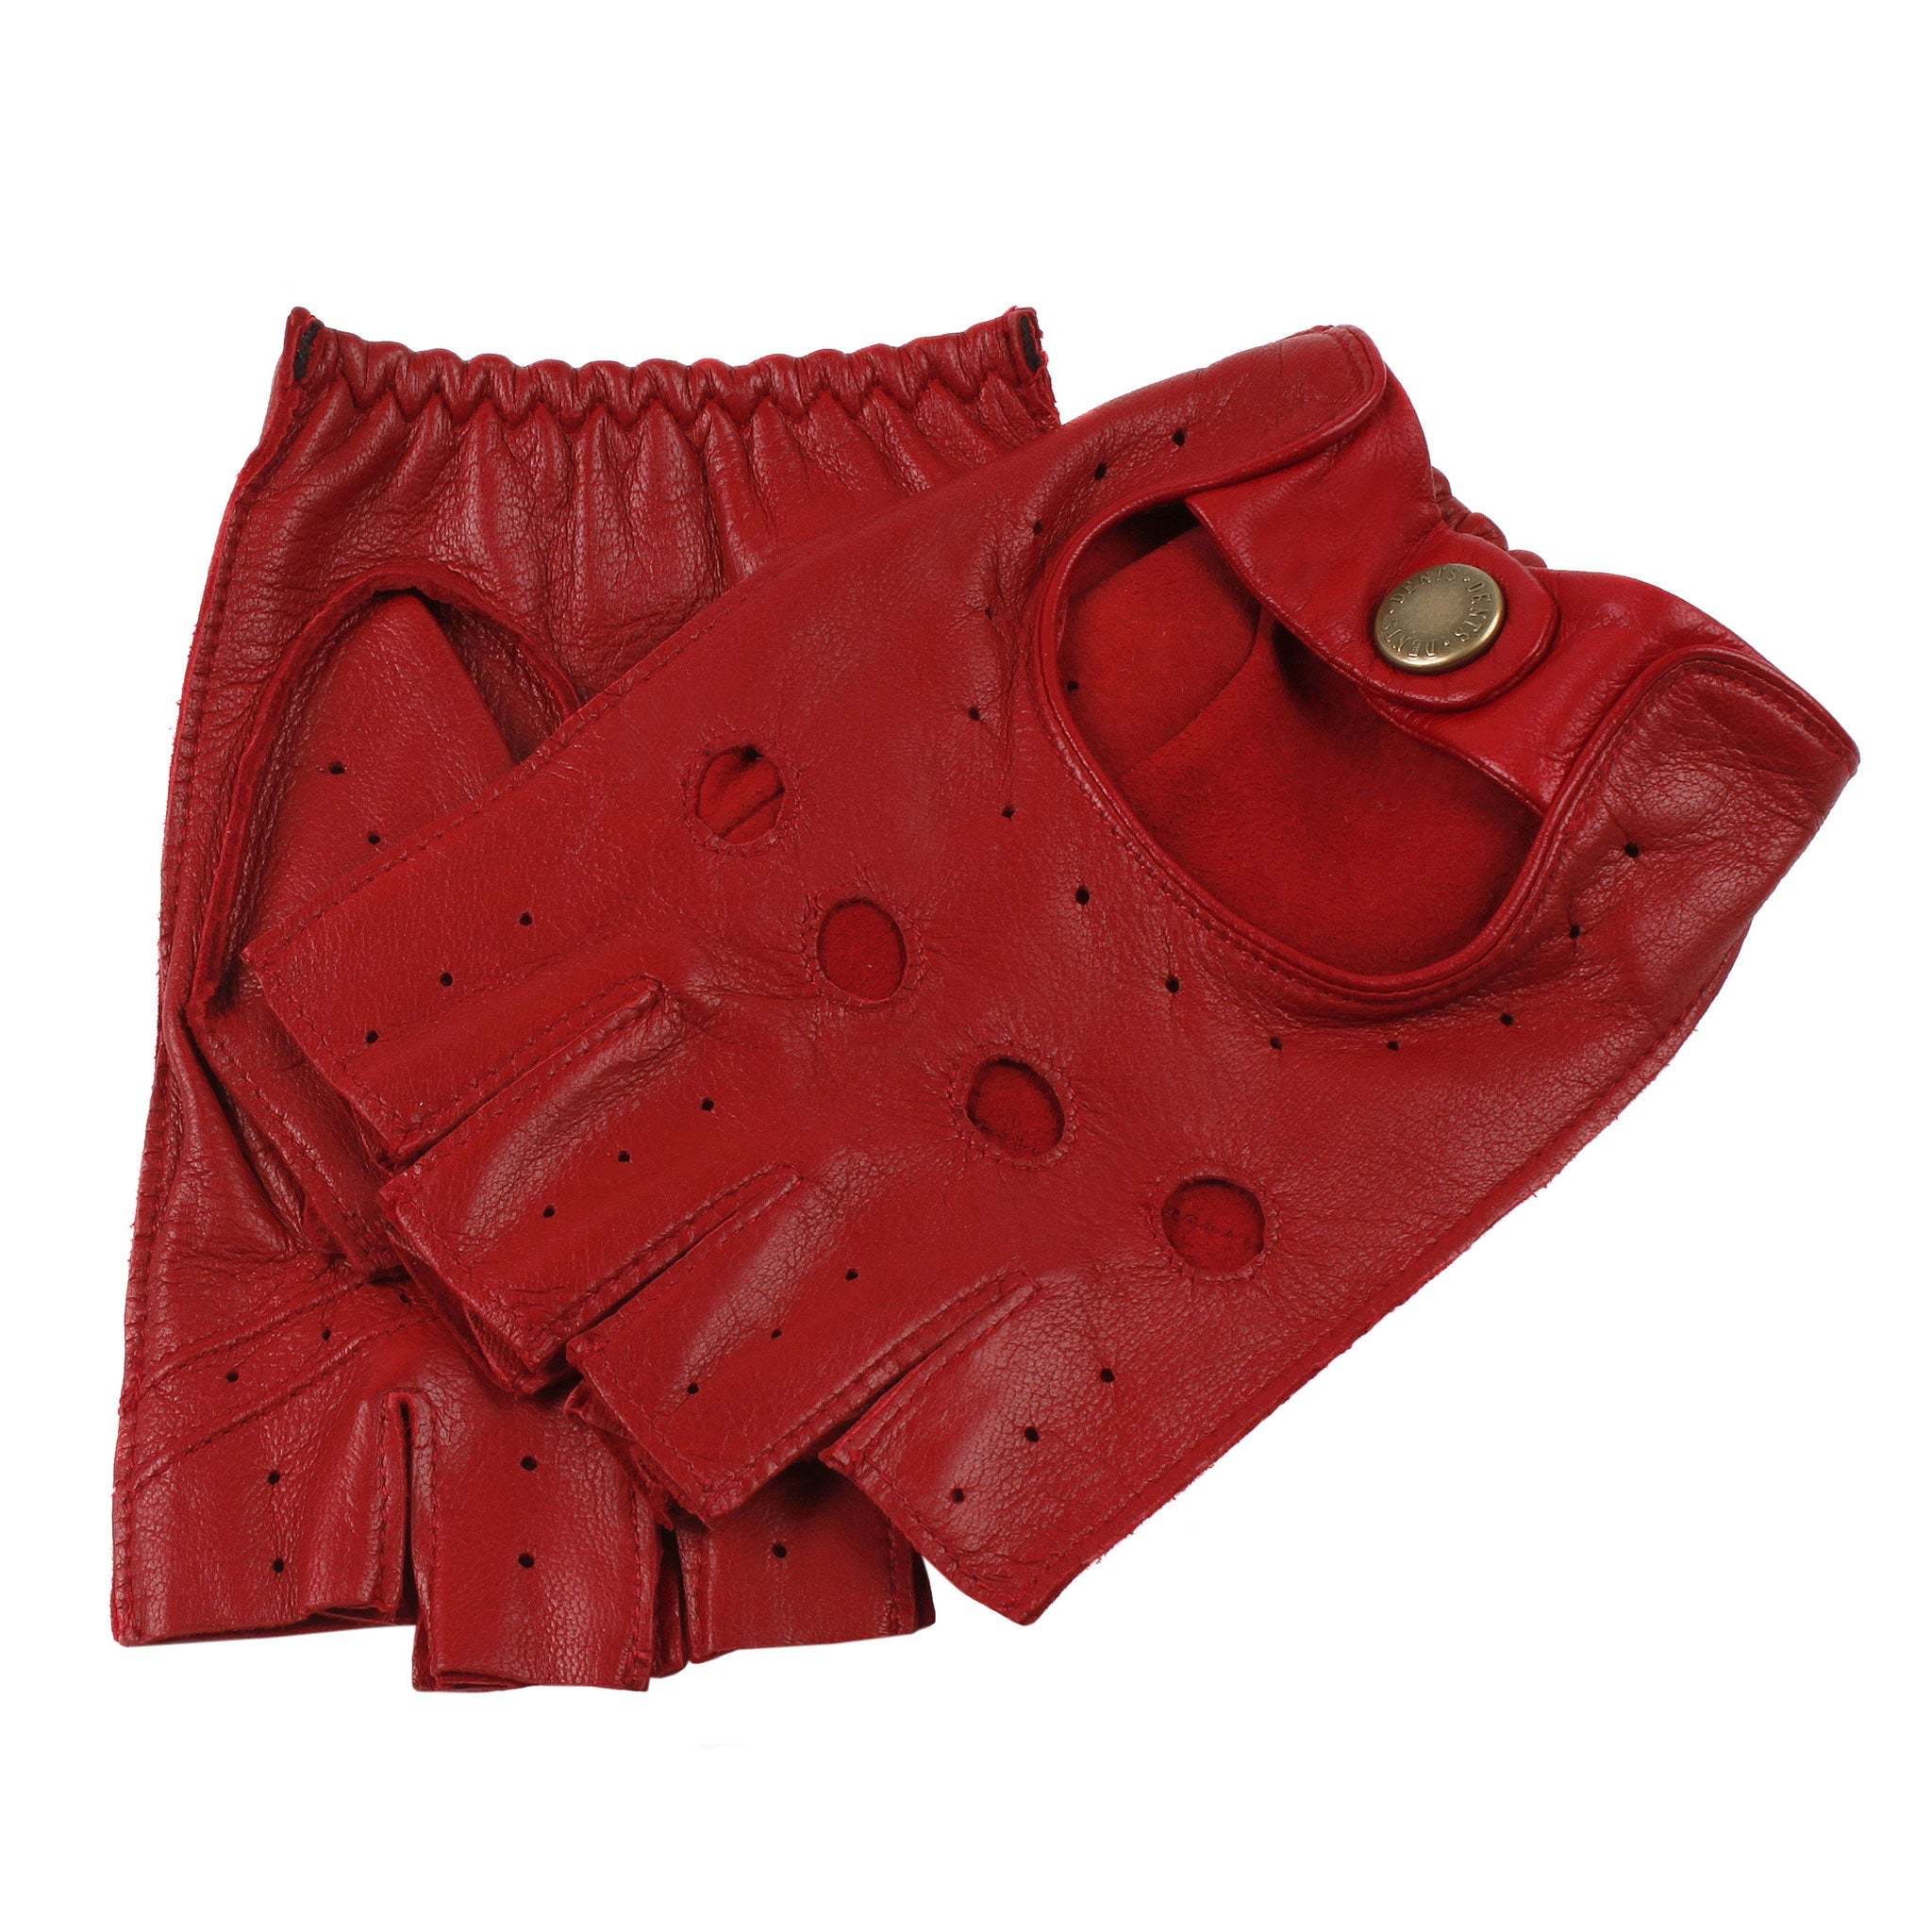 http://us.dentsgloves.com/cdn/shop/files/mens-fingerless-leather-driving-gloves-berry.jpg?v=1712571904